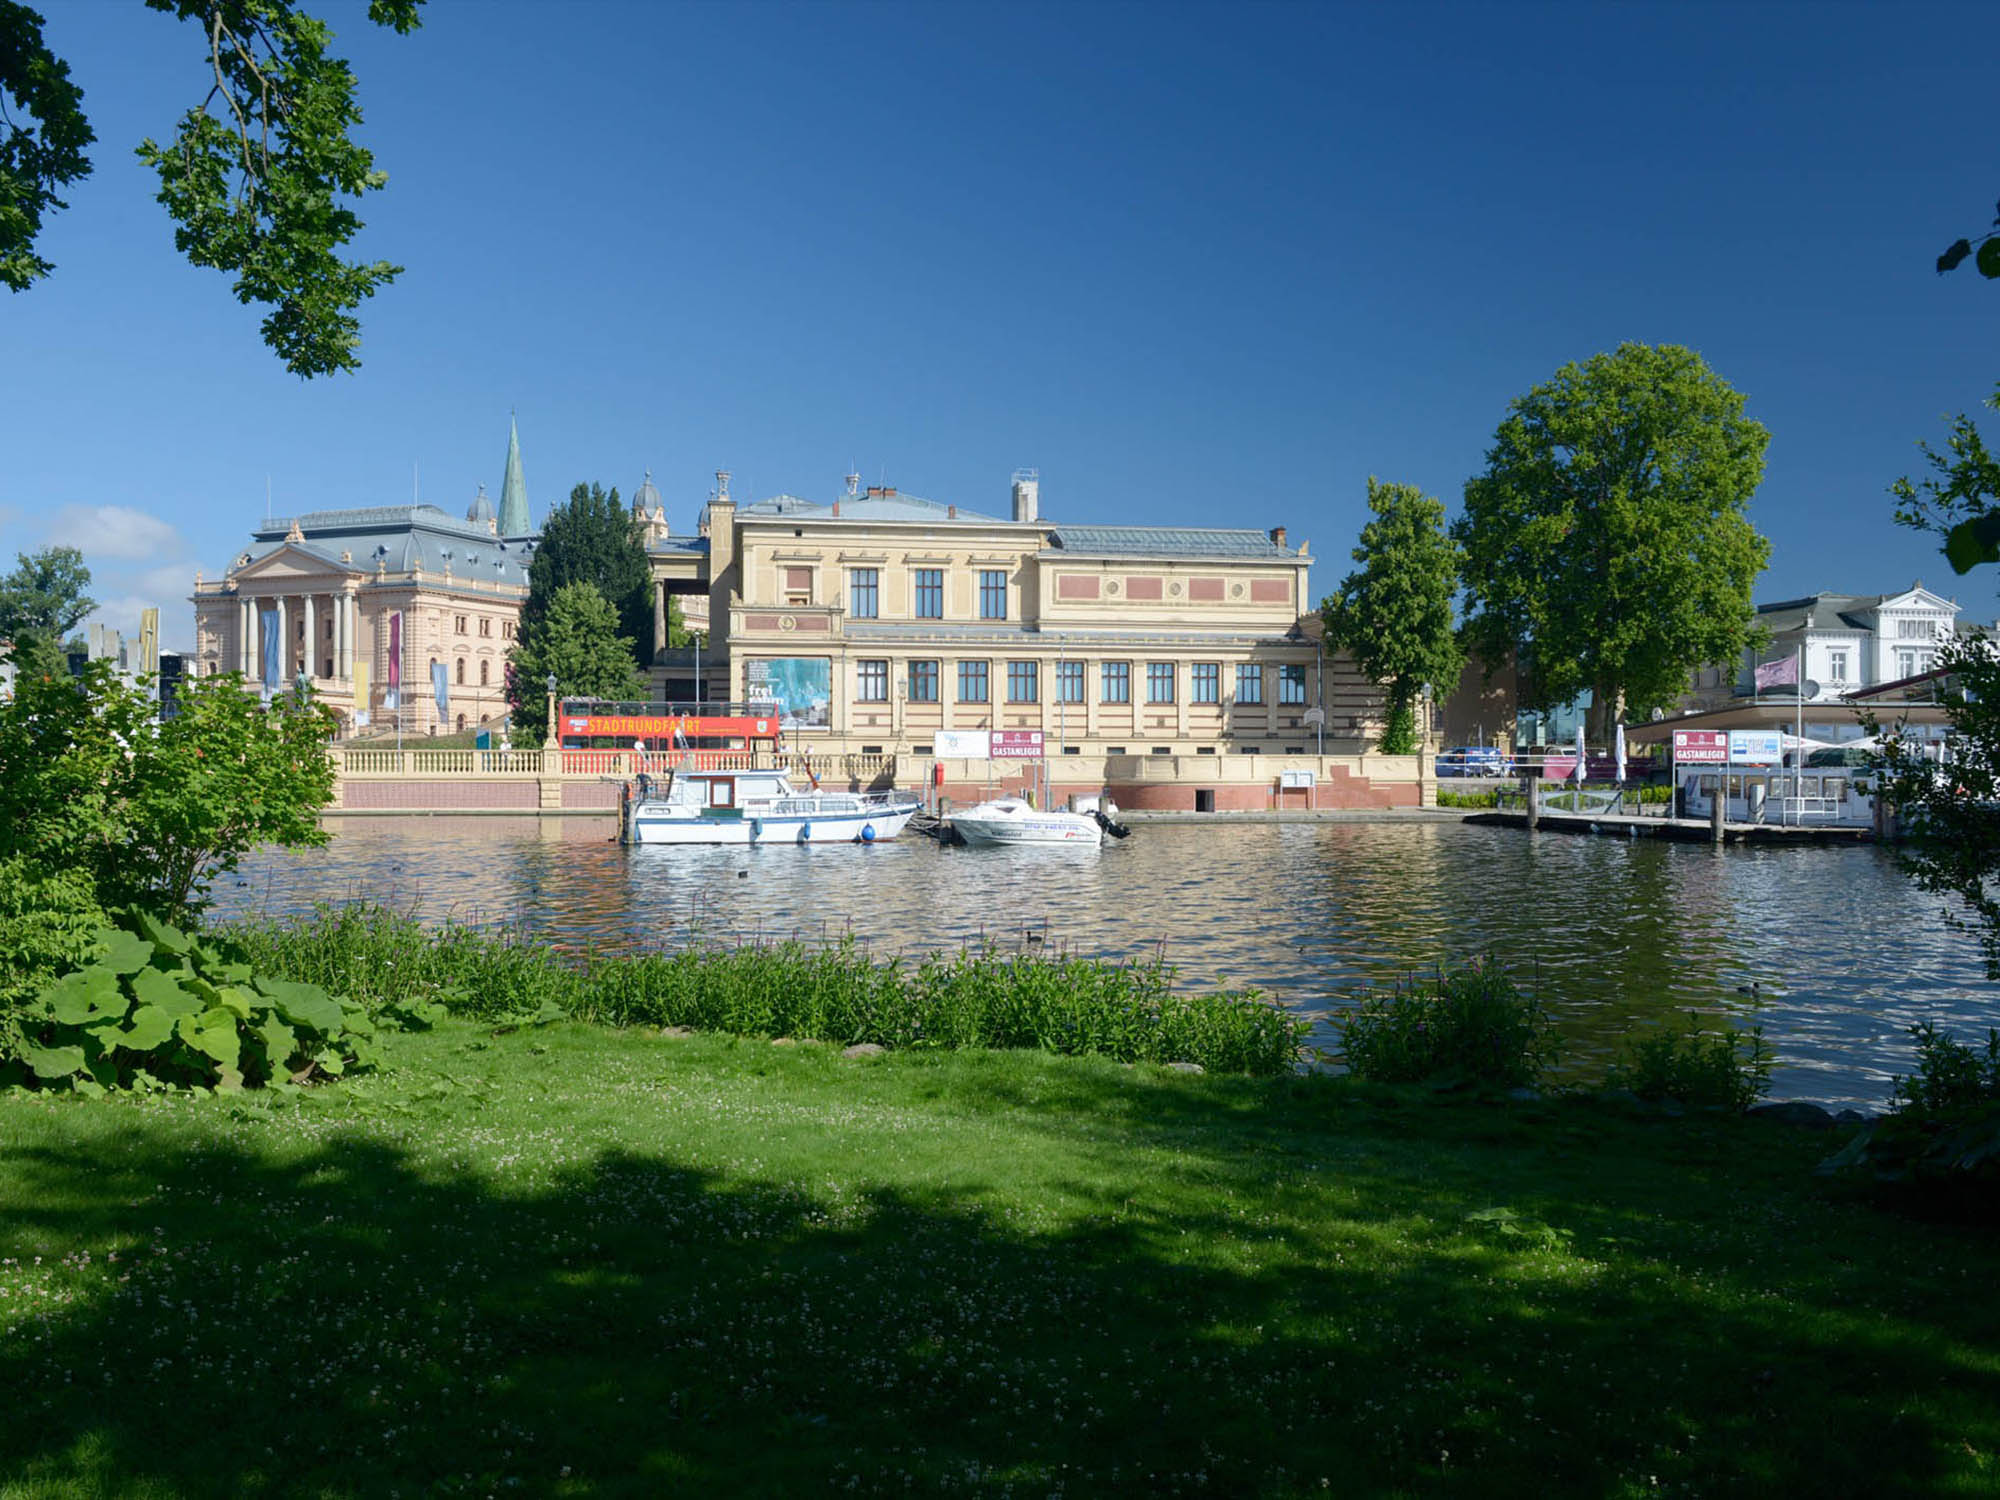 Staatliches Museum Schwerin